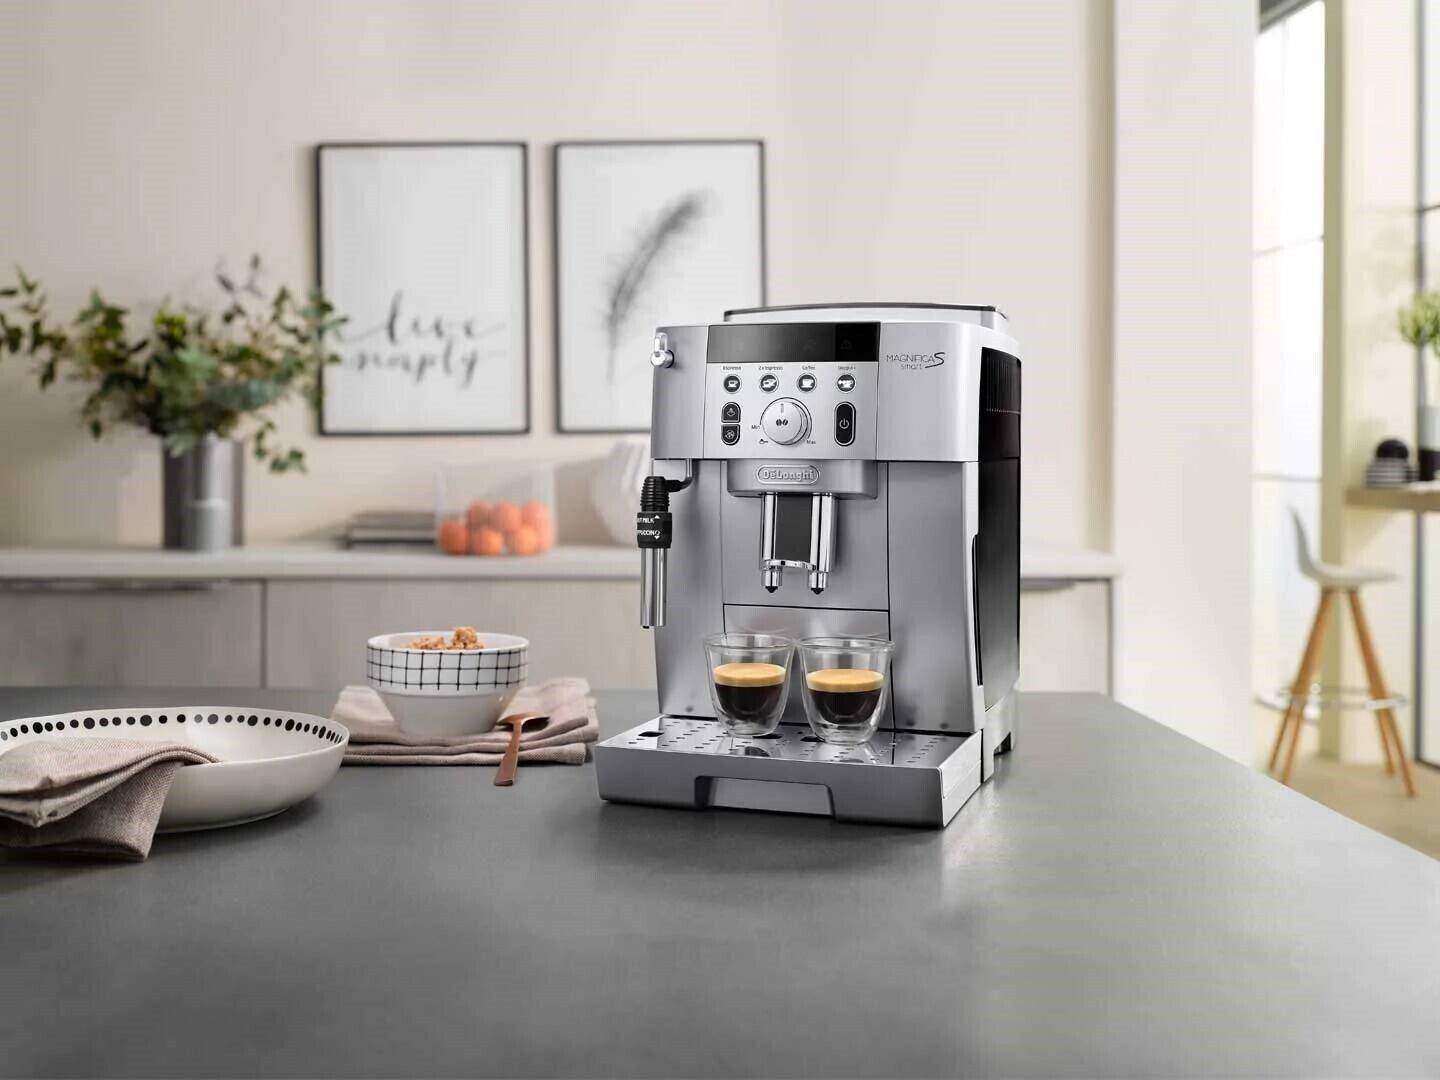 Недорогая кофеварка для дома: как выбрать качественную модель